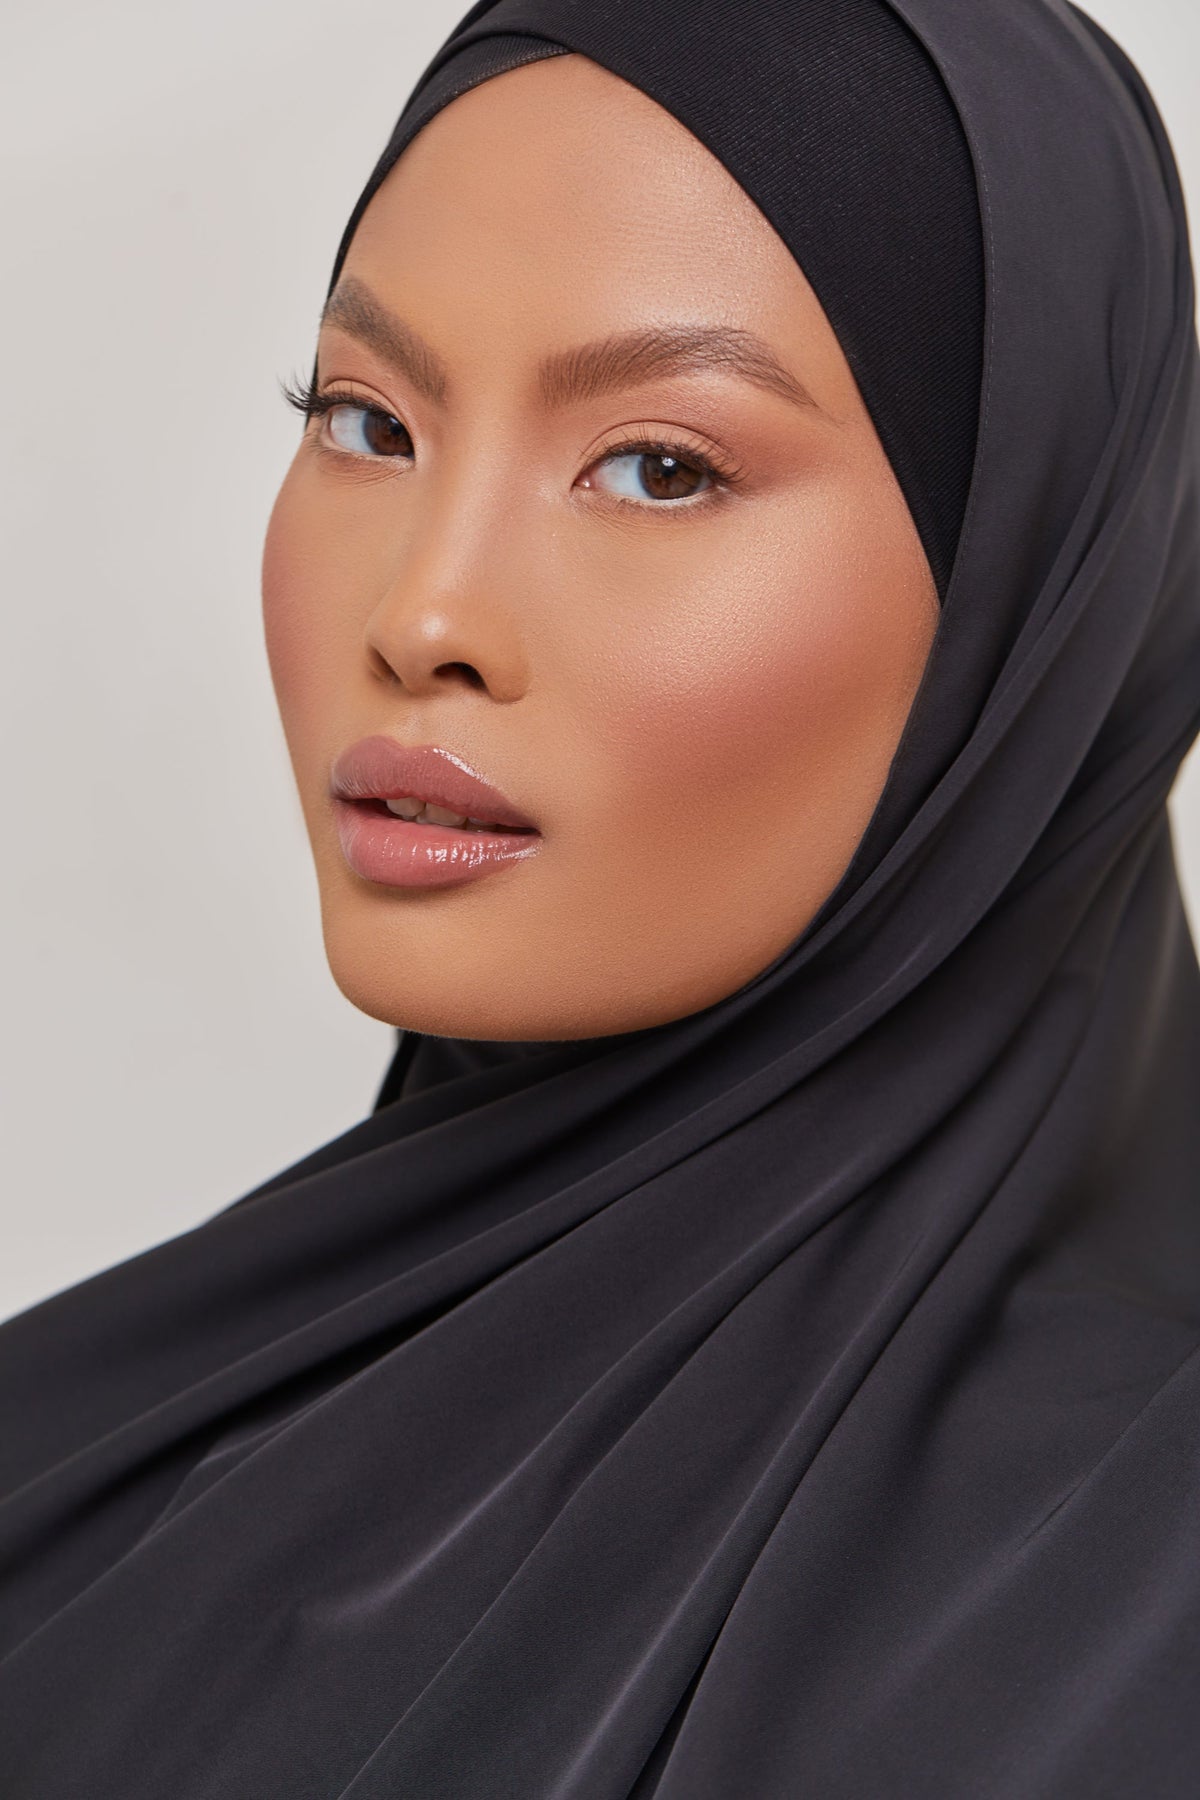 Medina Silk Hijab - Black Seed epschoolboard 